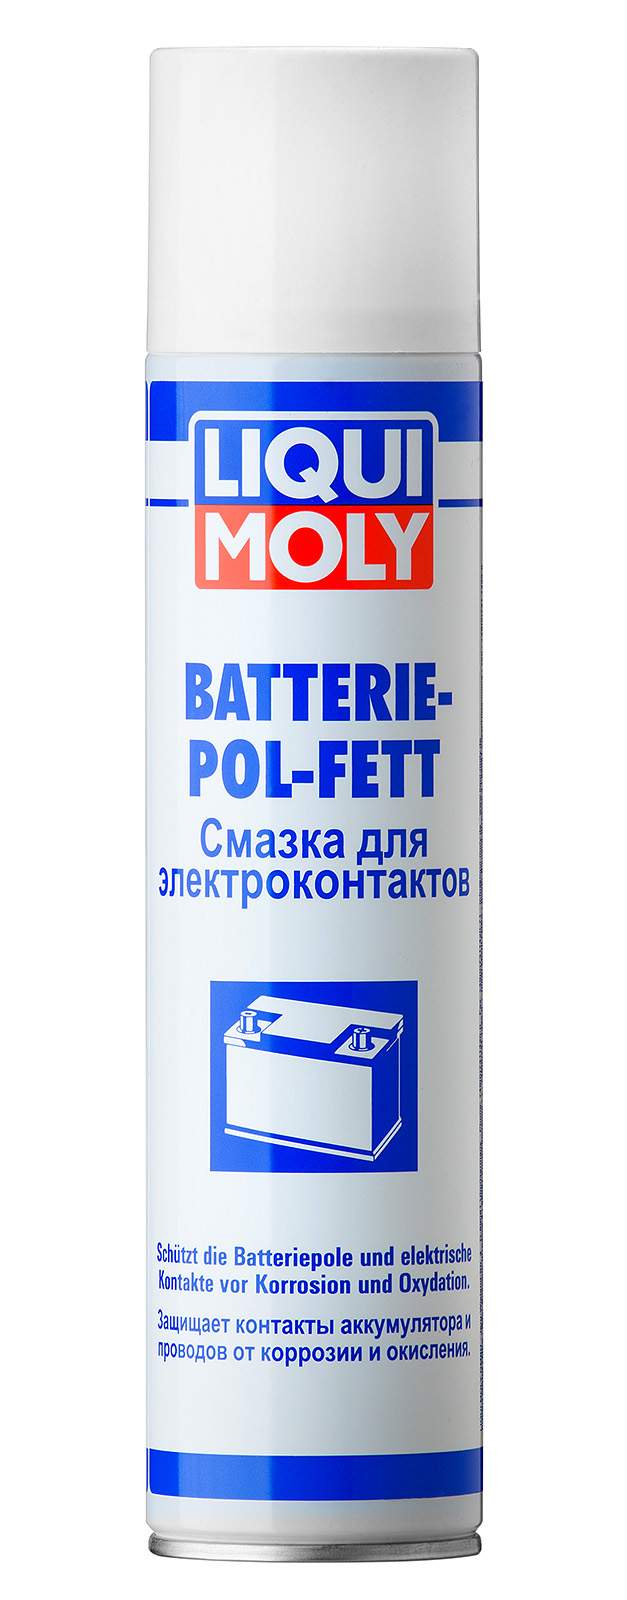 Смазка для электроконтактов LIQUI MOLY 8046 Batterie-Pol-Fett - купить в Москве, цены на Мегамаркет | 100000400171